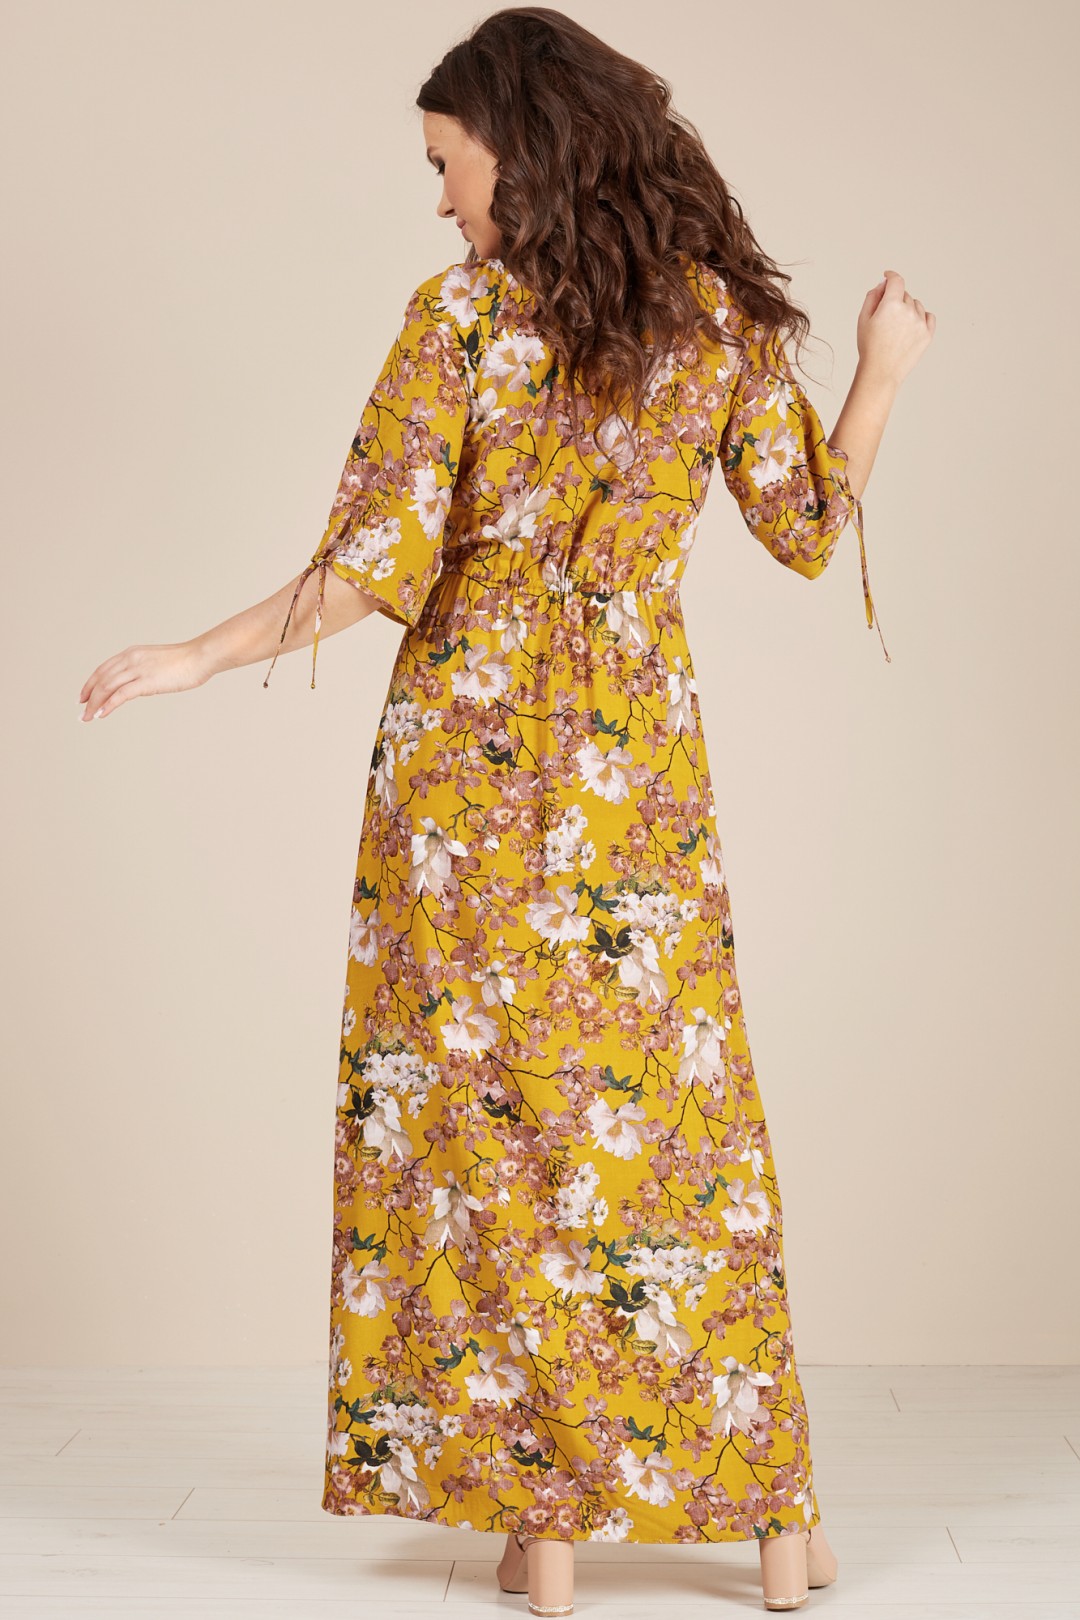 Платье ТЭФФИ-стиль 1499 солнечный цветы